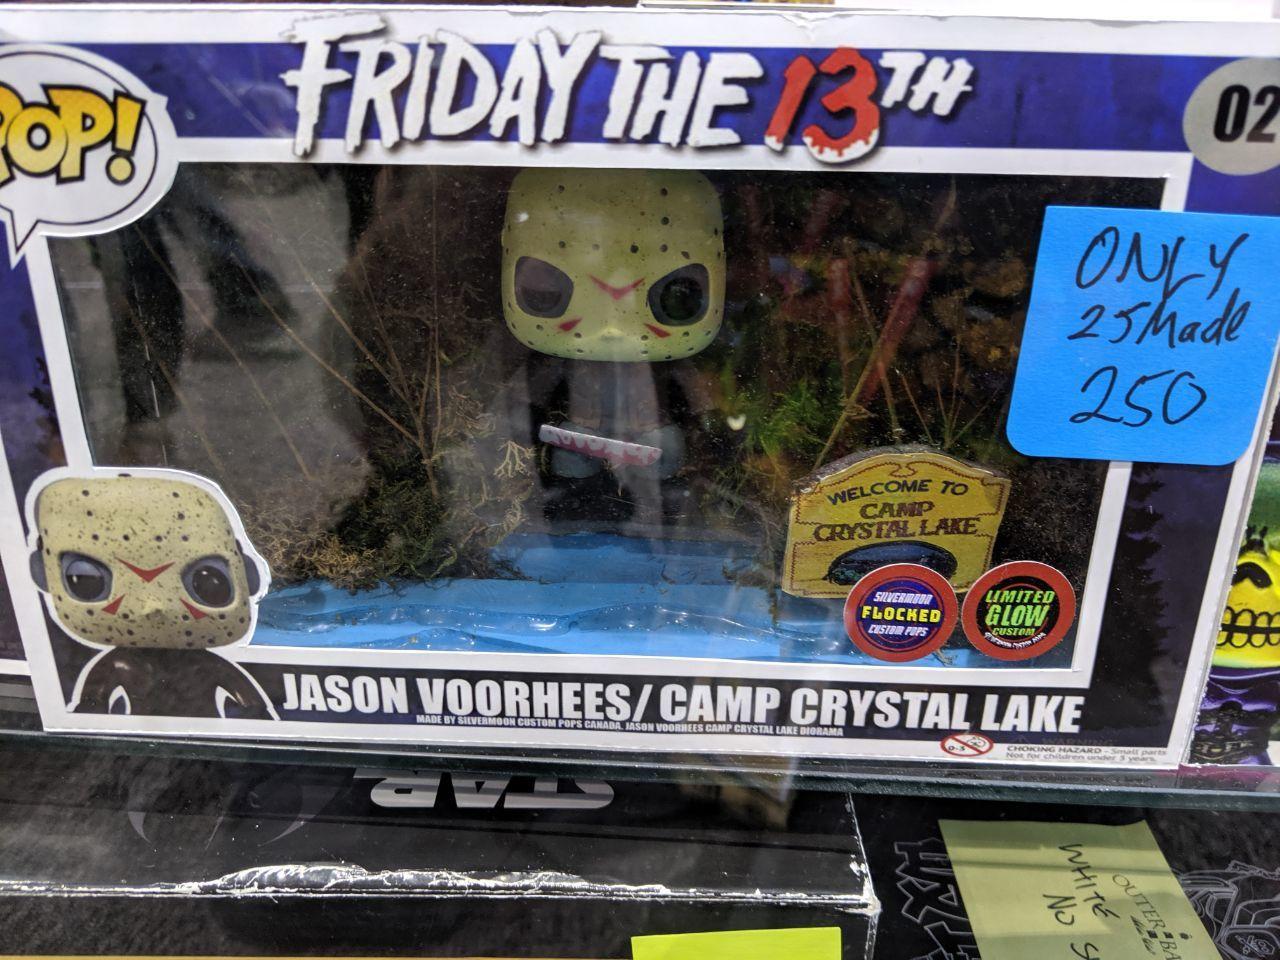 Jason Voorhees at Camp Crystal Lake